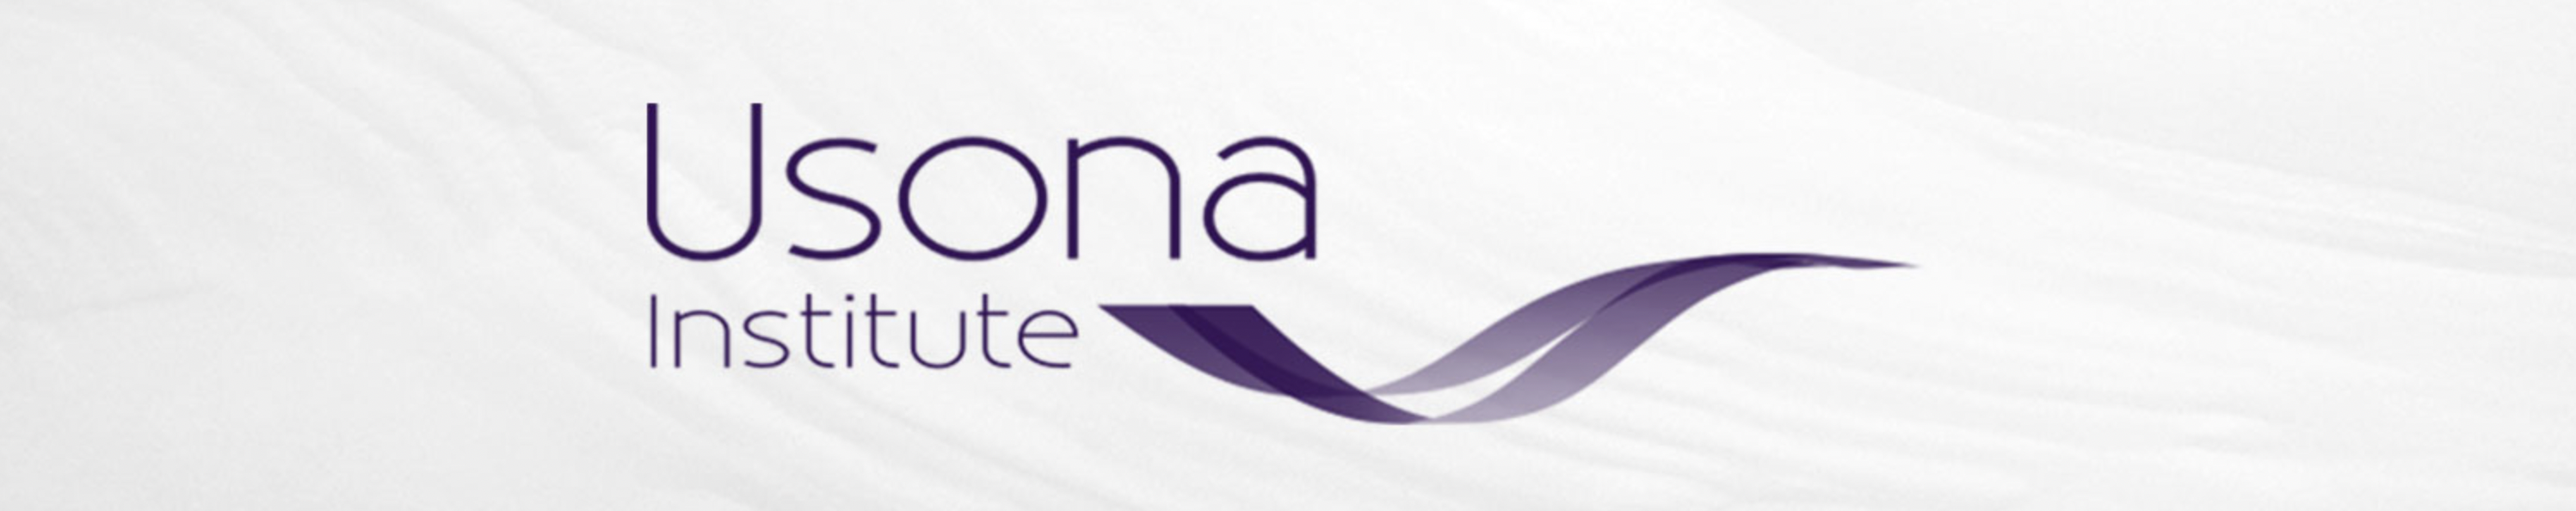 eusona institute logo extended